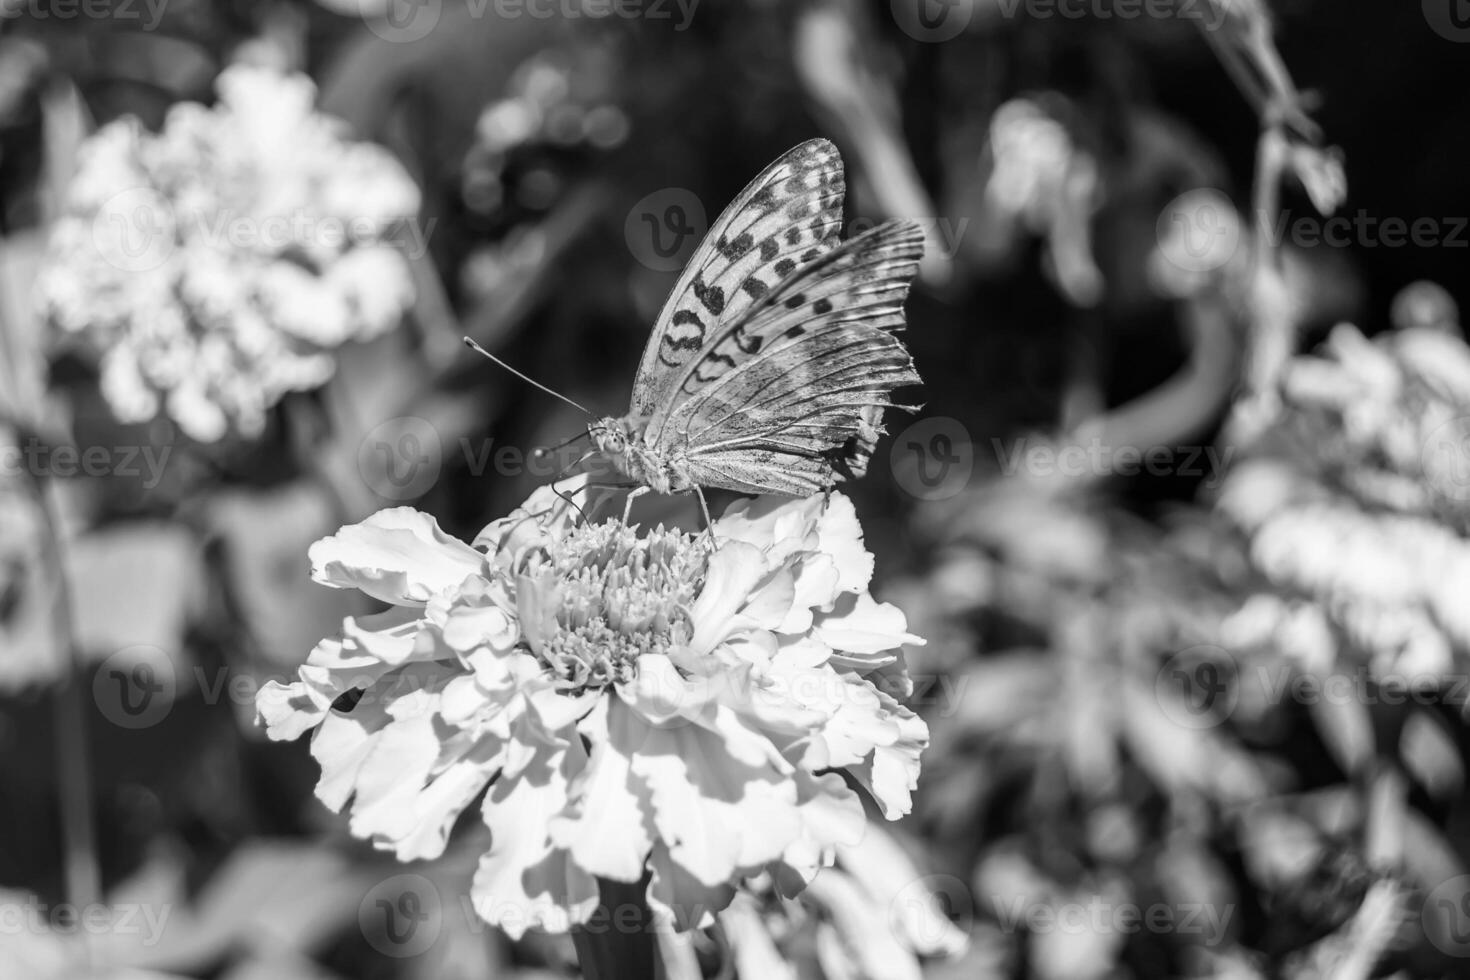 bellissimo fiore farfalla monarca su sfondo prato foto